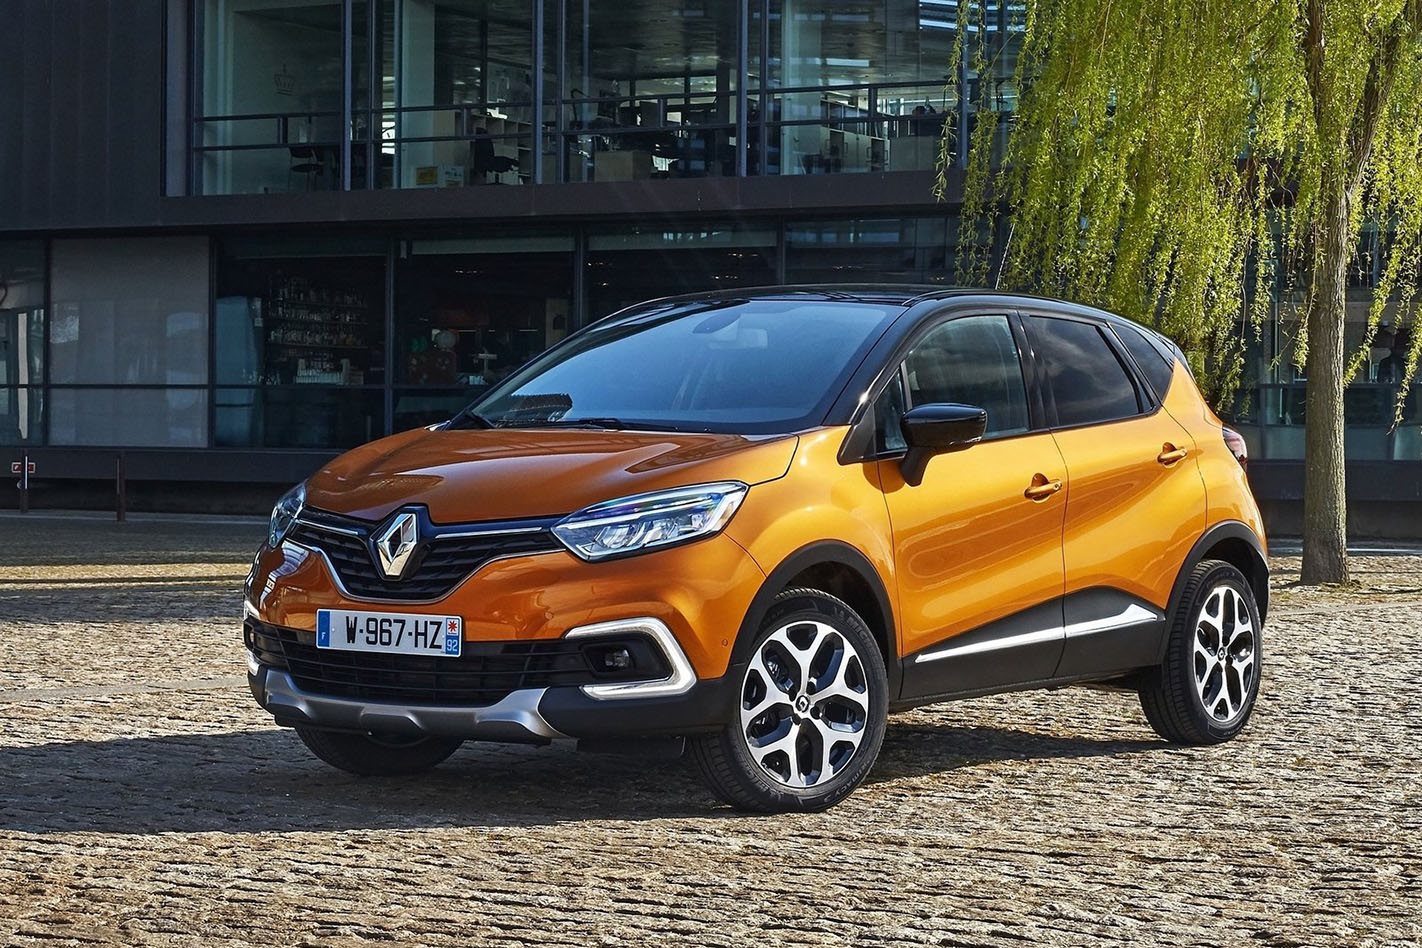 Renault Captur Price in Pakistan 2022 Specs Features